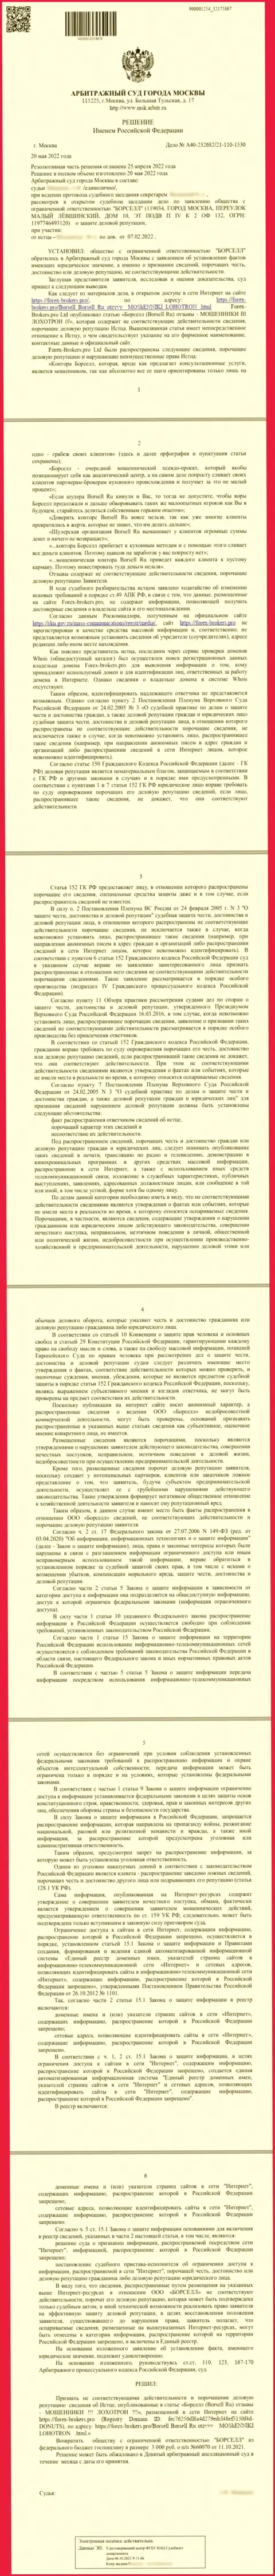 Скриншот решения суда по исковому заявлению конторы ООО БОРСЕЛЛ